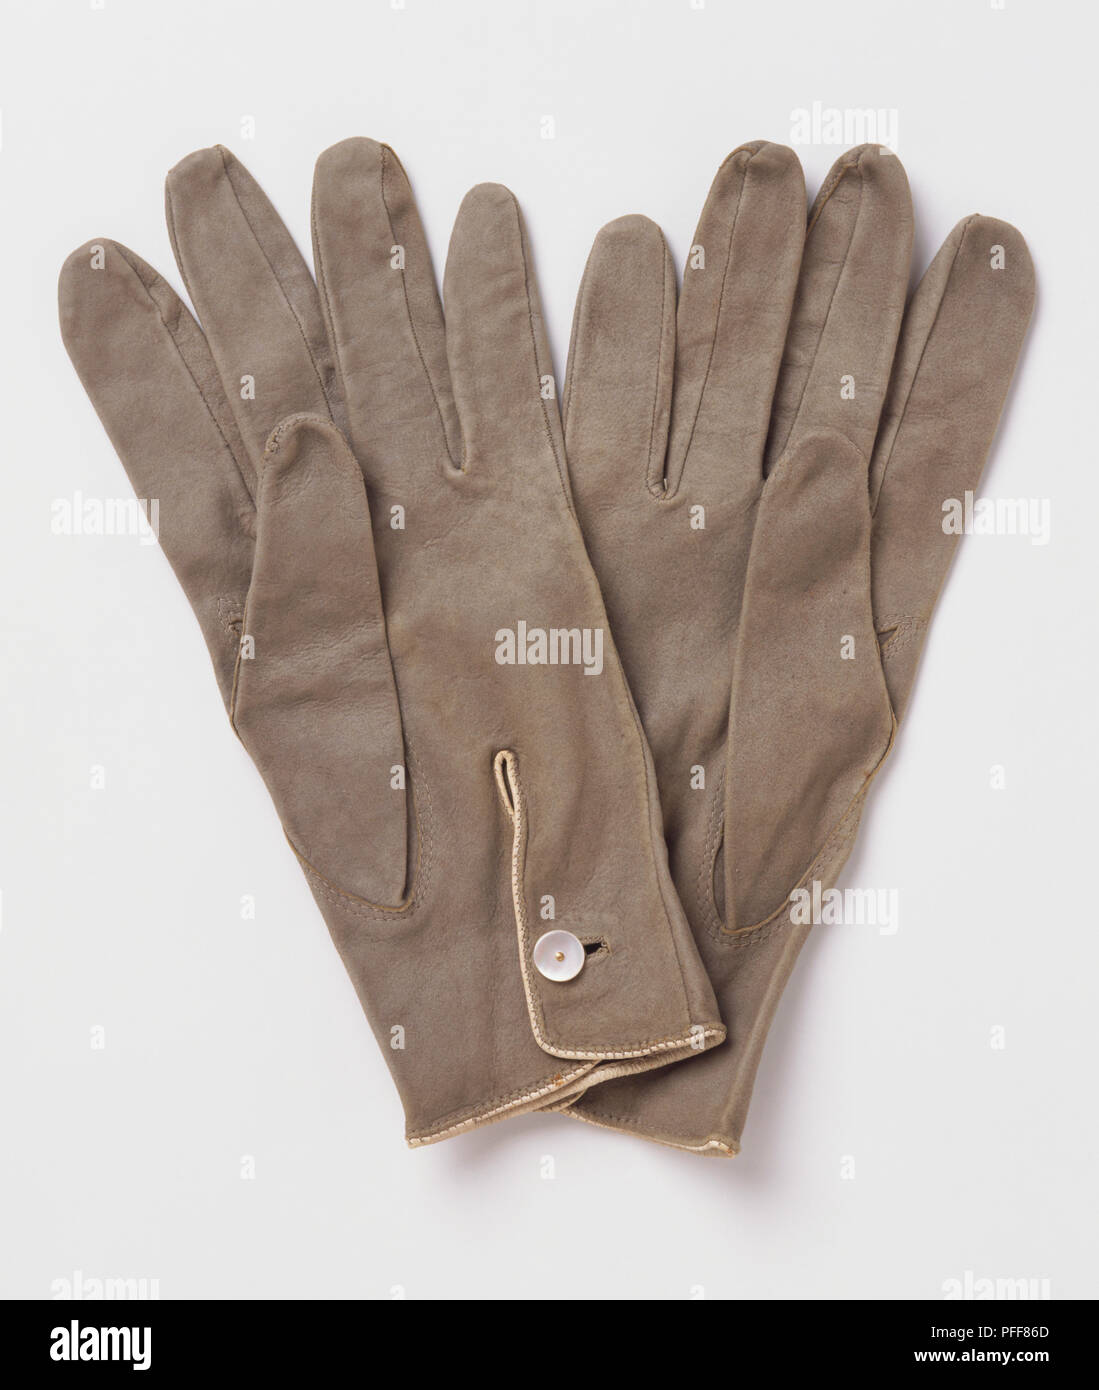 Coppia di grigio indossato i guanti di cuoio, fissata con i pulsanti bianchi, fodera beige parzialmente visibile Foto Stock